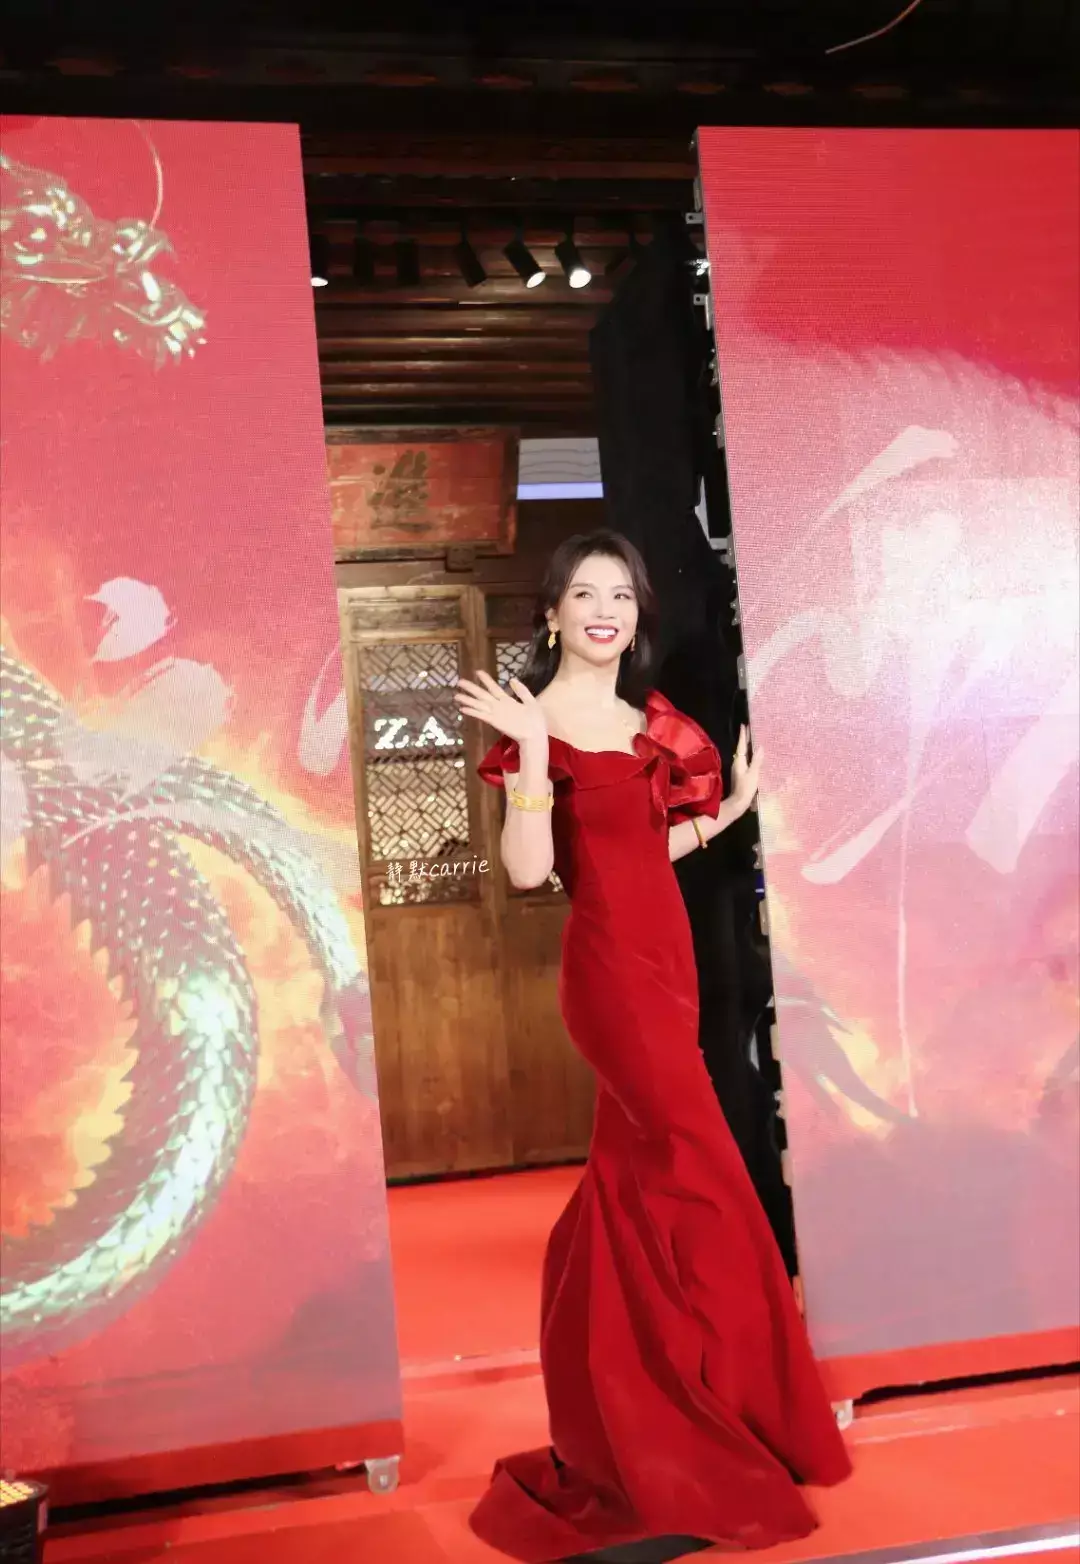 刘涛线下活动穿紧身红裙 身材曲线曼妙